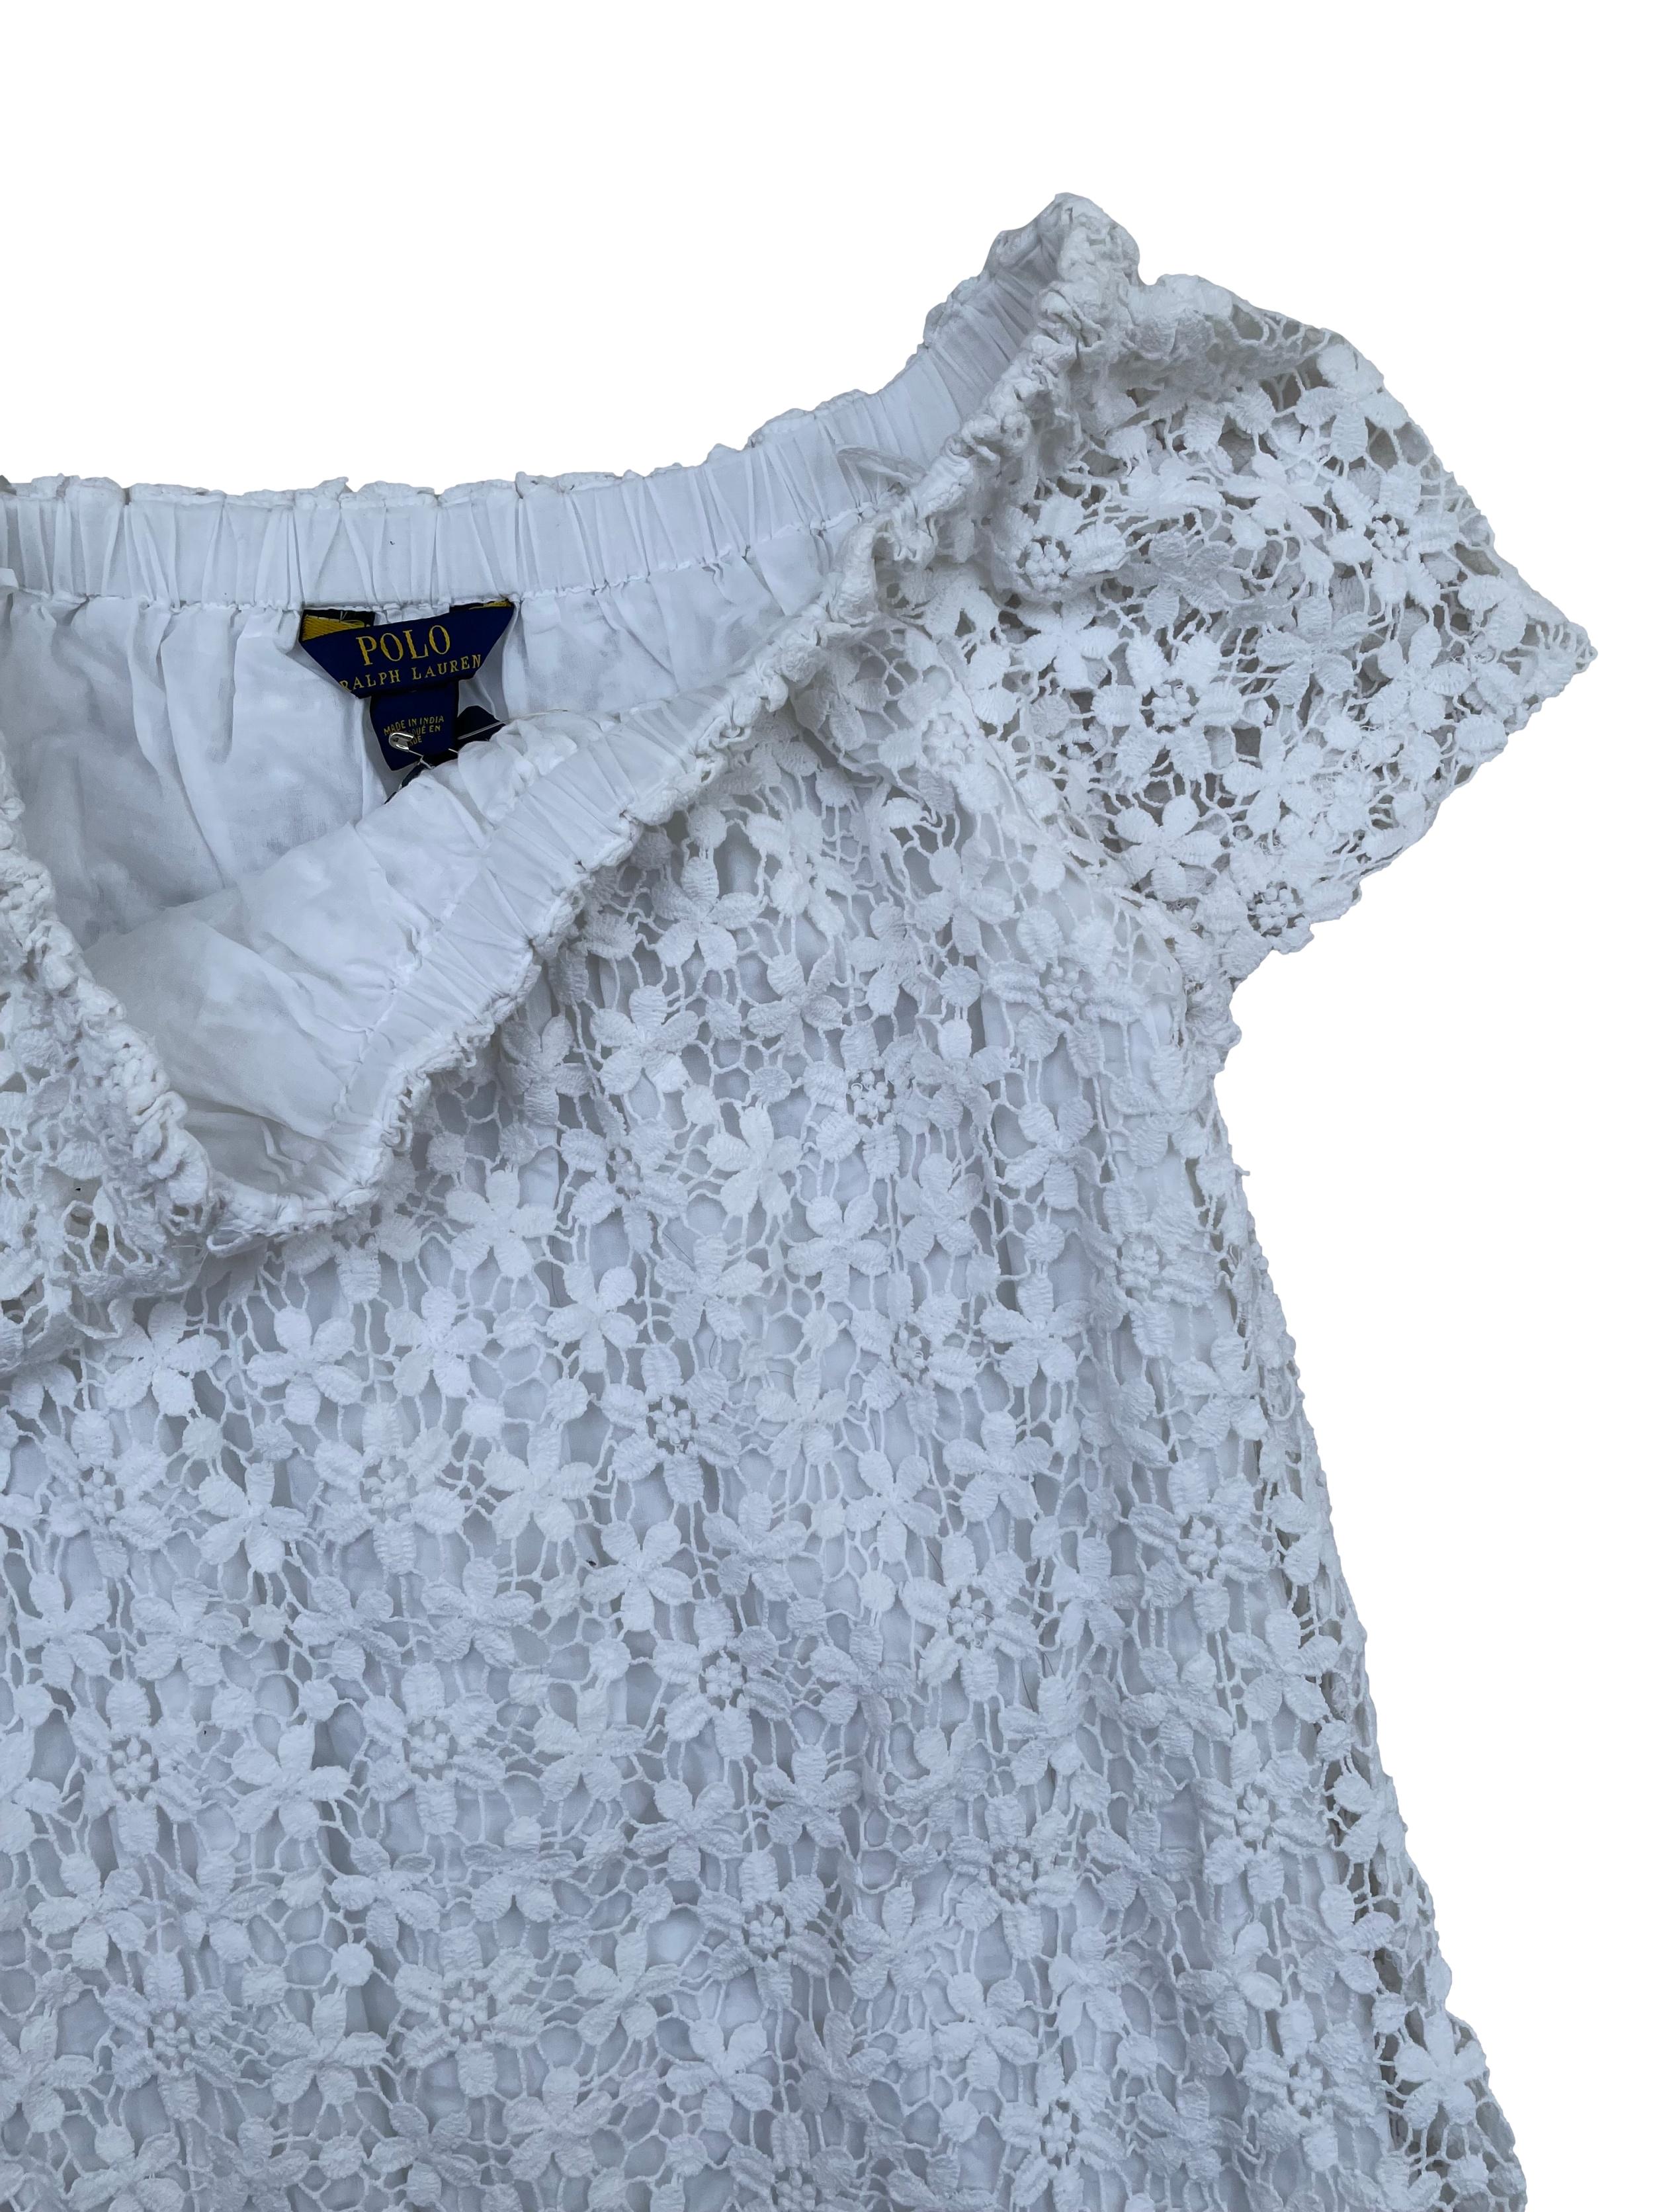 Vestido Polo Ralph Lauren off shoulder de encaje blanco 100% algodón, forrado. Busto 95cm Largo 82cm. Nuevo con etiqueta.